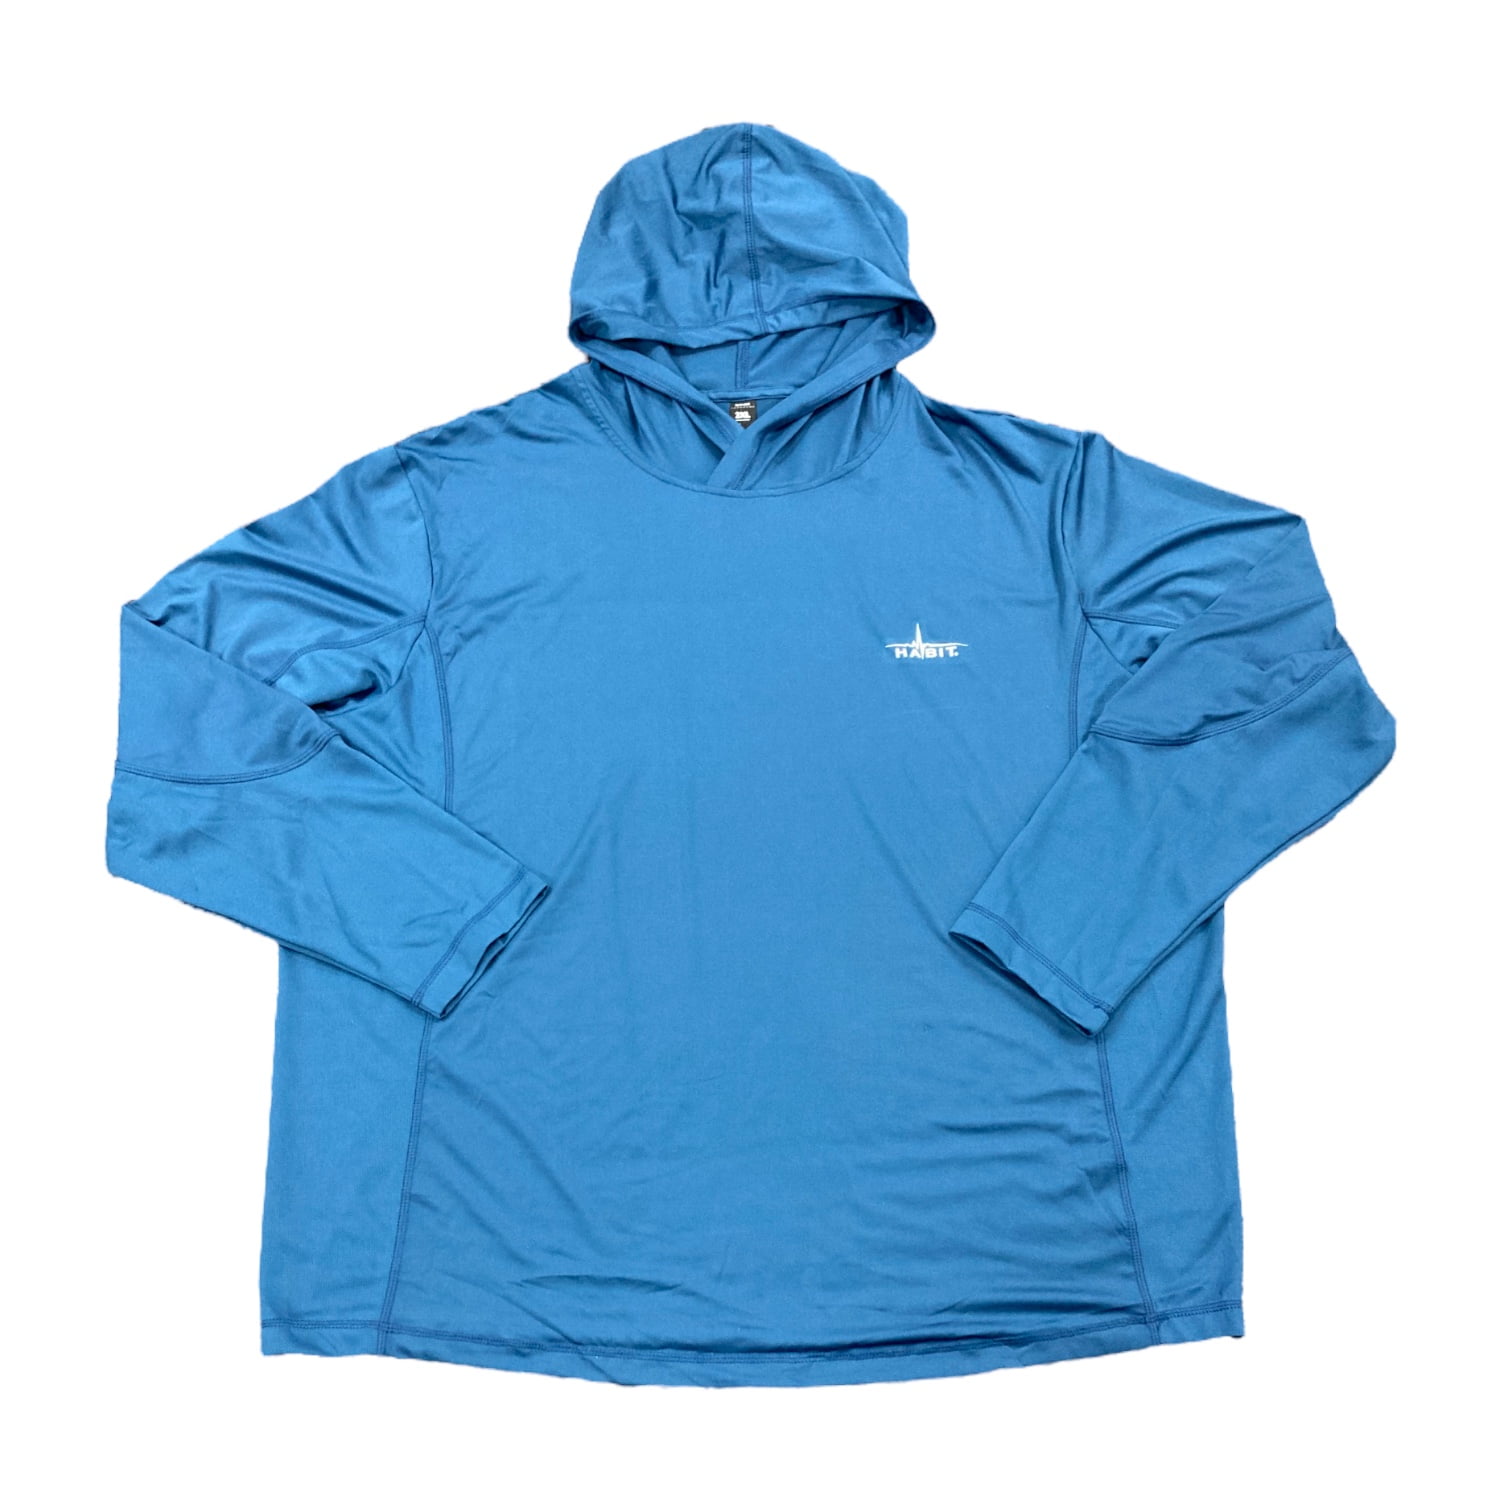 Habit Men's Hidden Cove Hooded Lightweight Performance Layer Shirt (Ensign  Blue, XL)